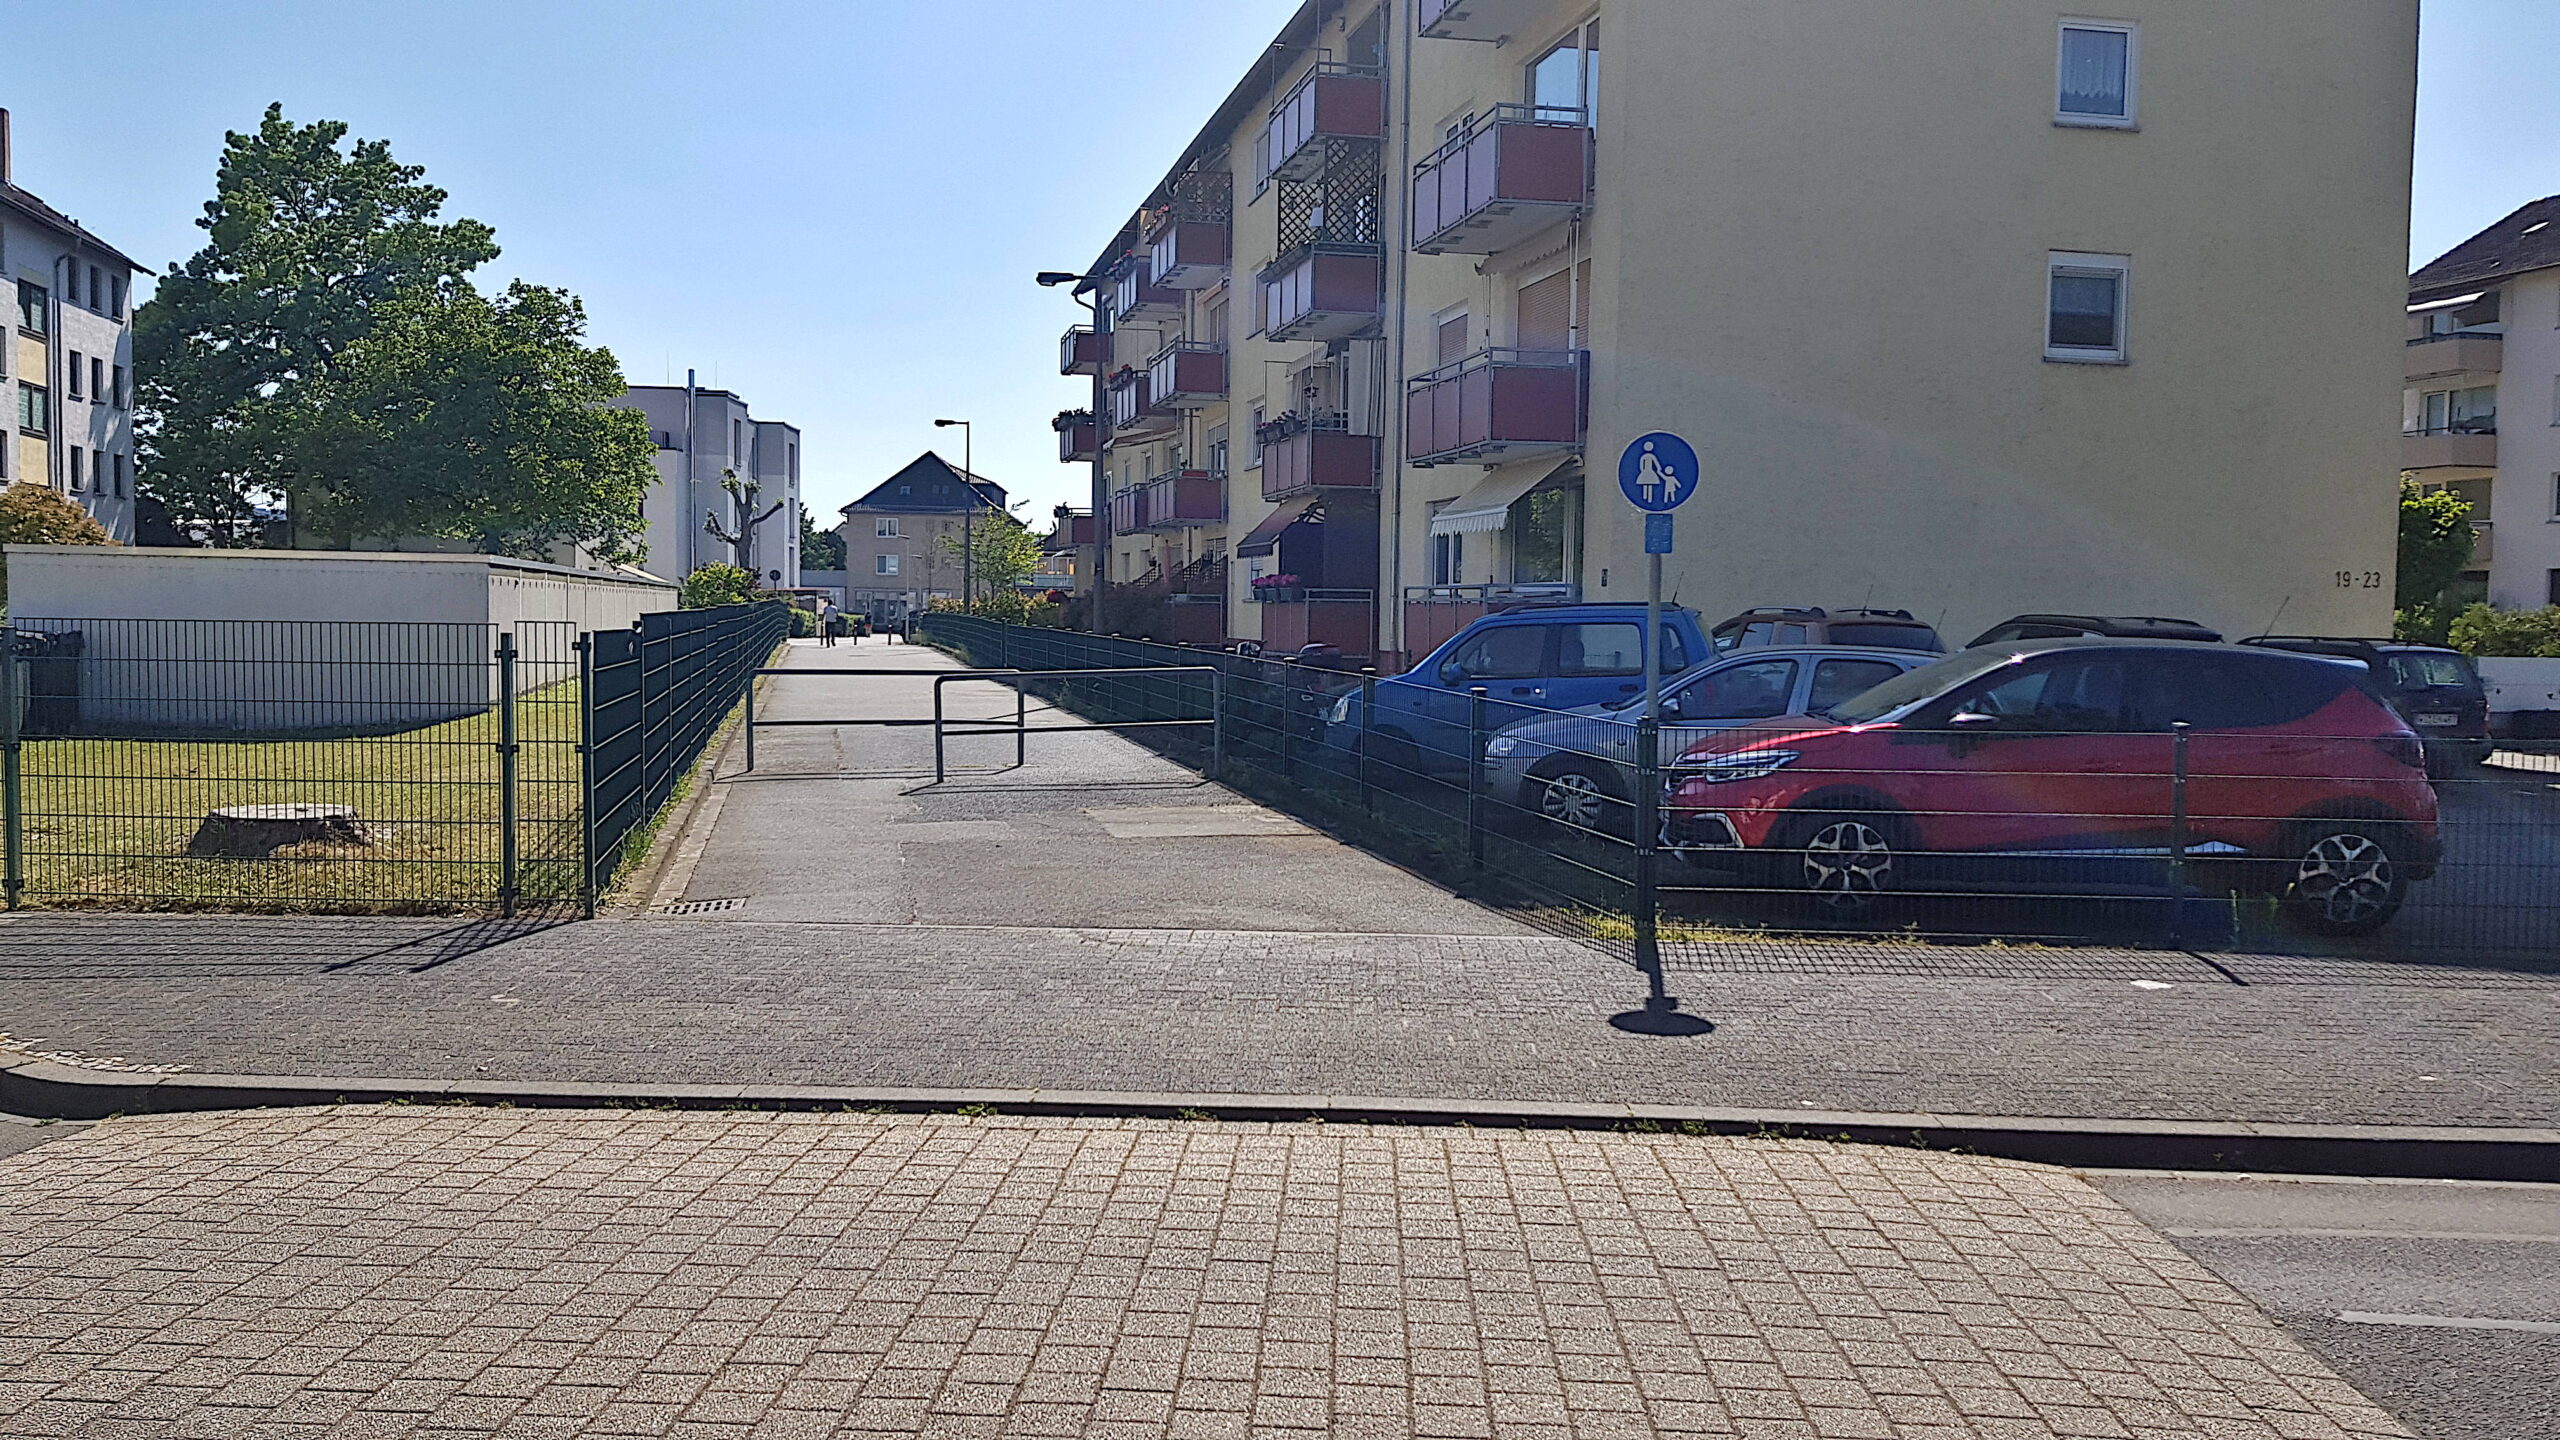 Abbildung 2: Blick von der Marie-Juchaz-Straße auf den Weg. Dieser ist derzeit als Gehweg ausgeschildert und mit zwei Umlaufgittern versehen.  Öffnung des Wegs zwischen Marie-Juchaz-Straße und Wiesbadener Straße für den Radverkehr